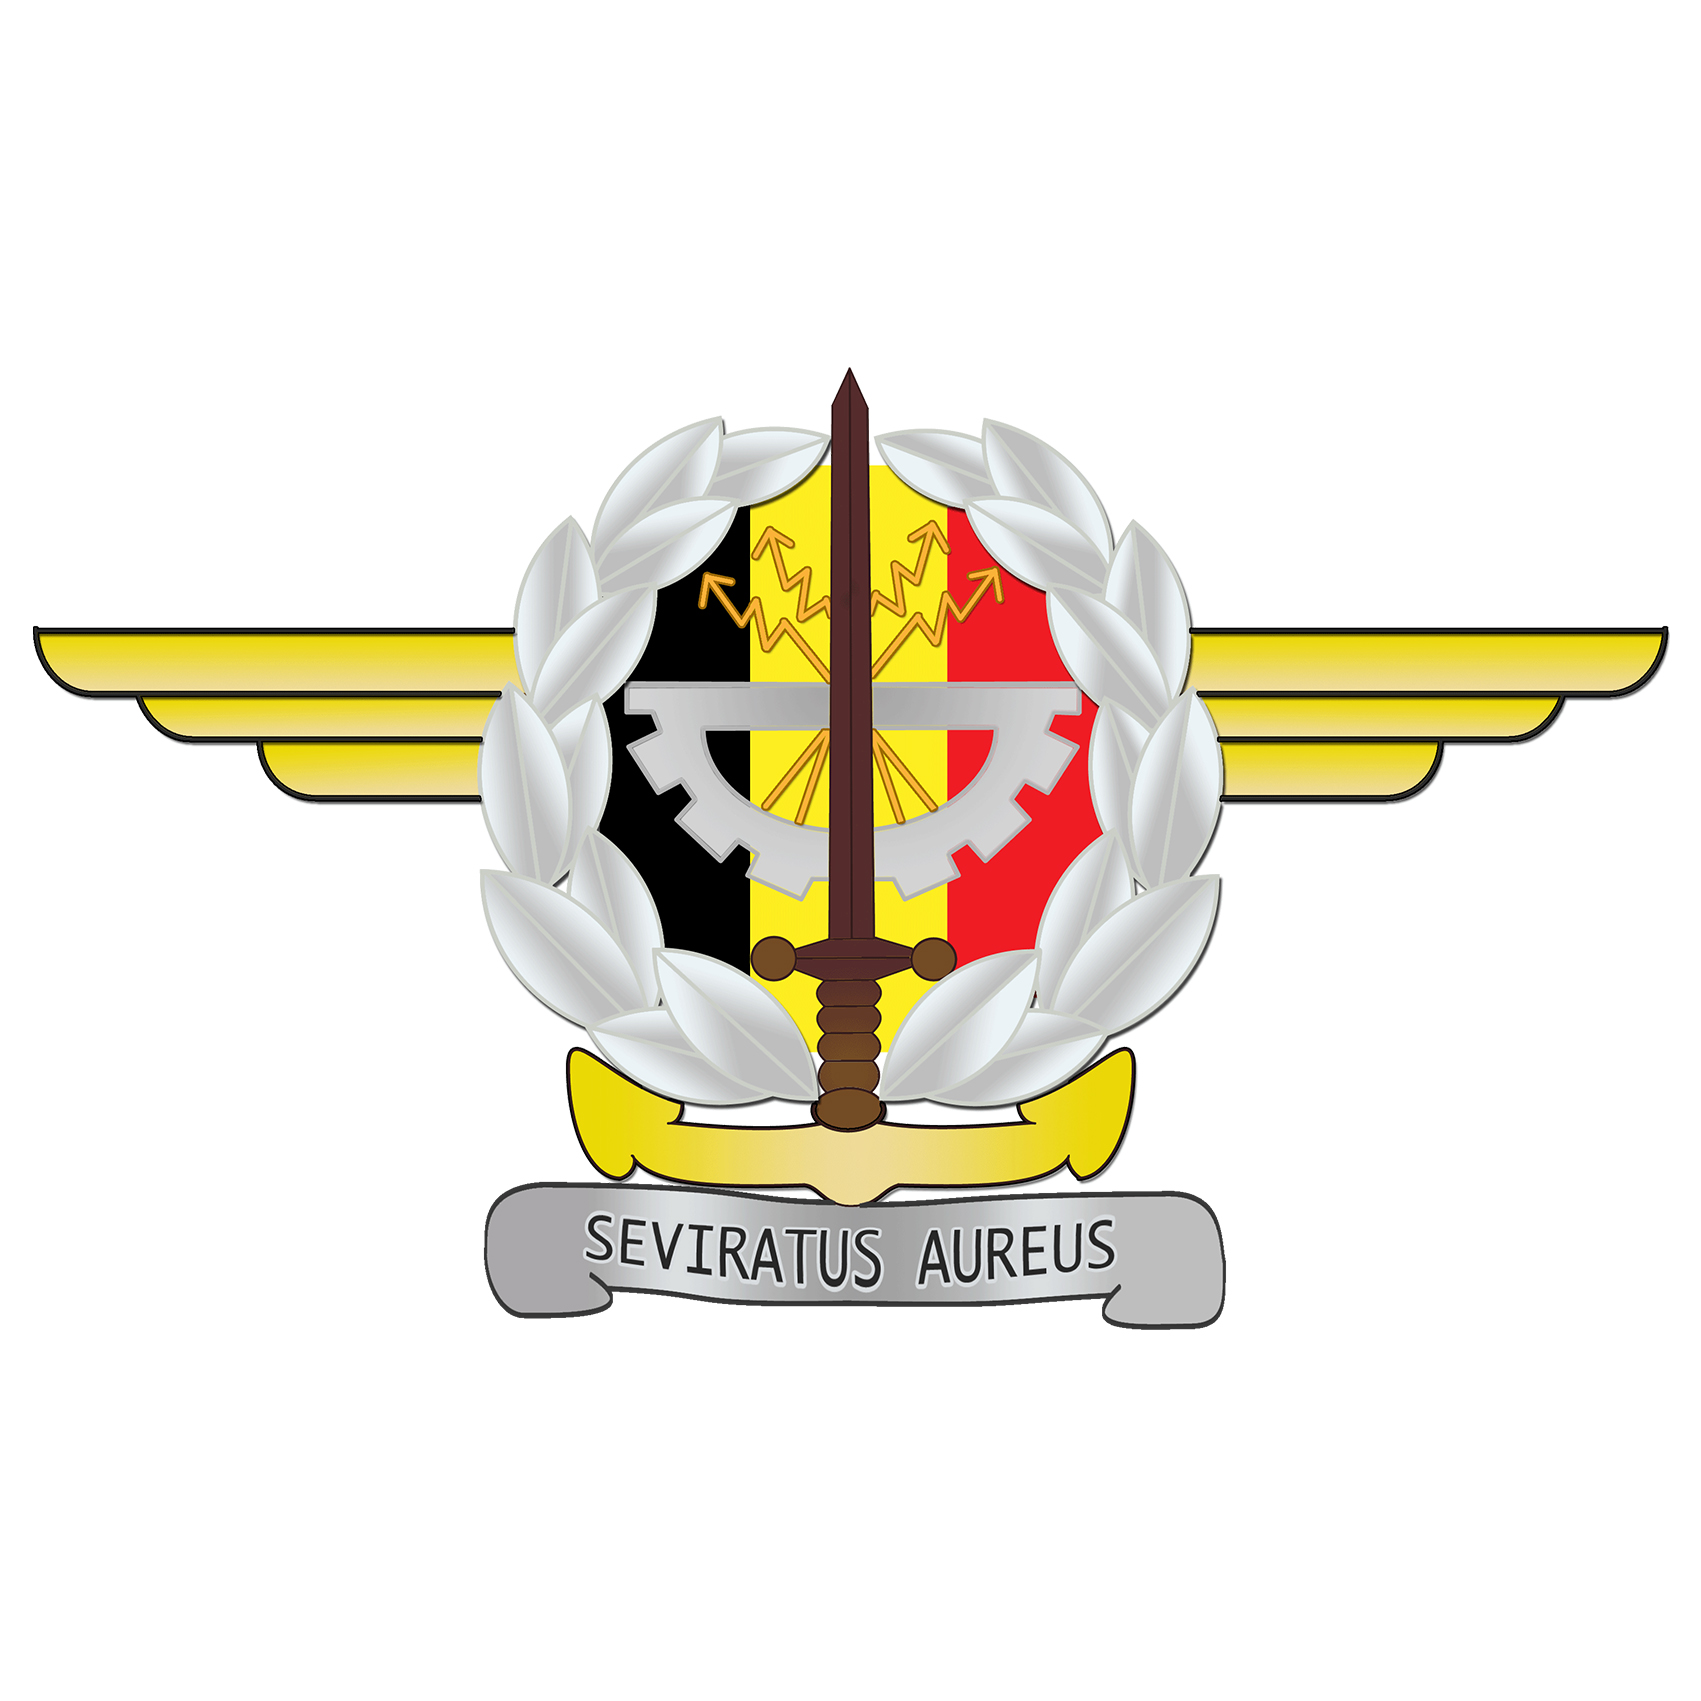 Seviratus Aureus logo